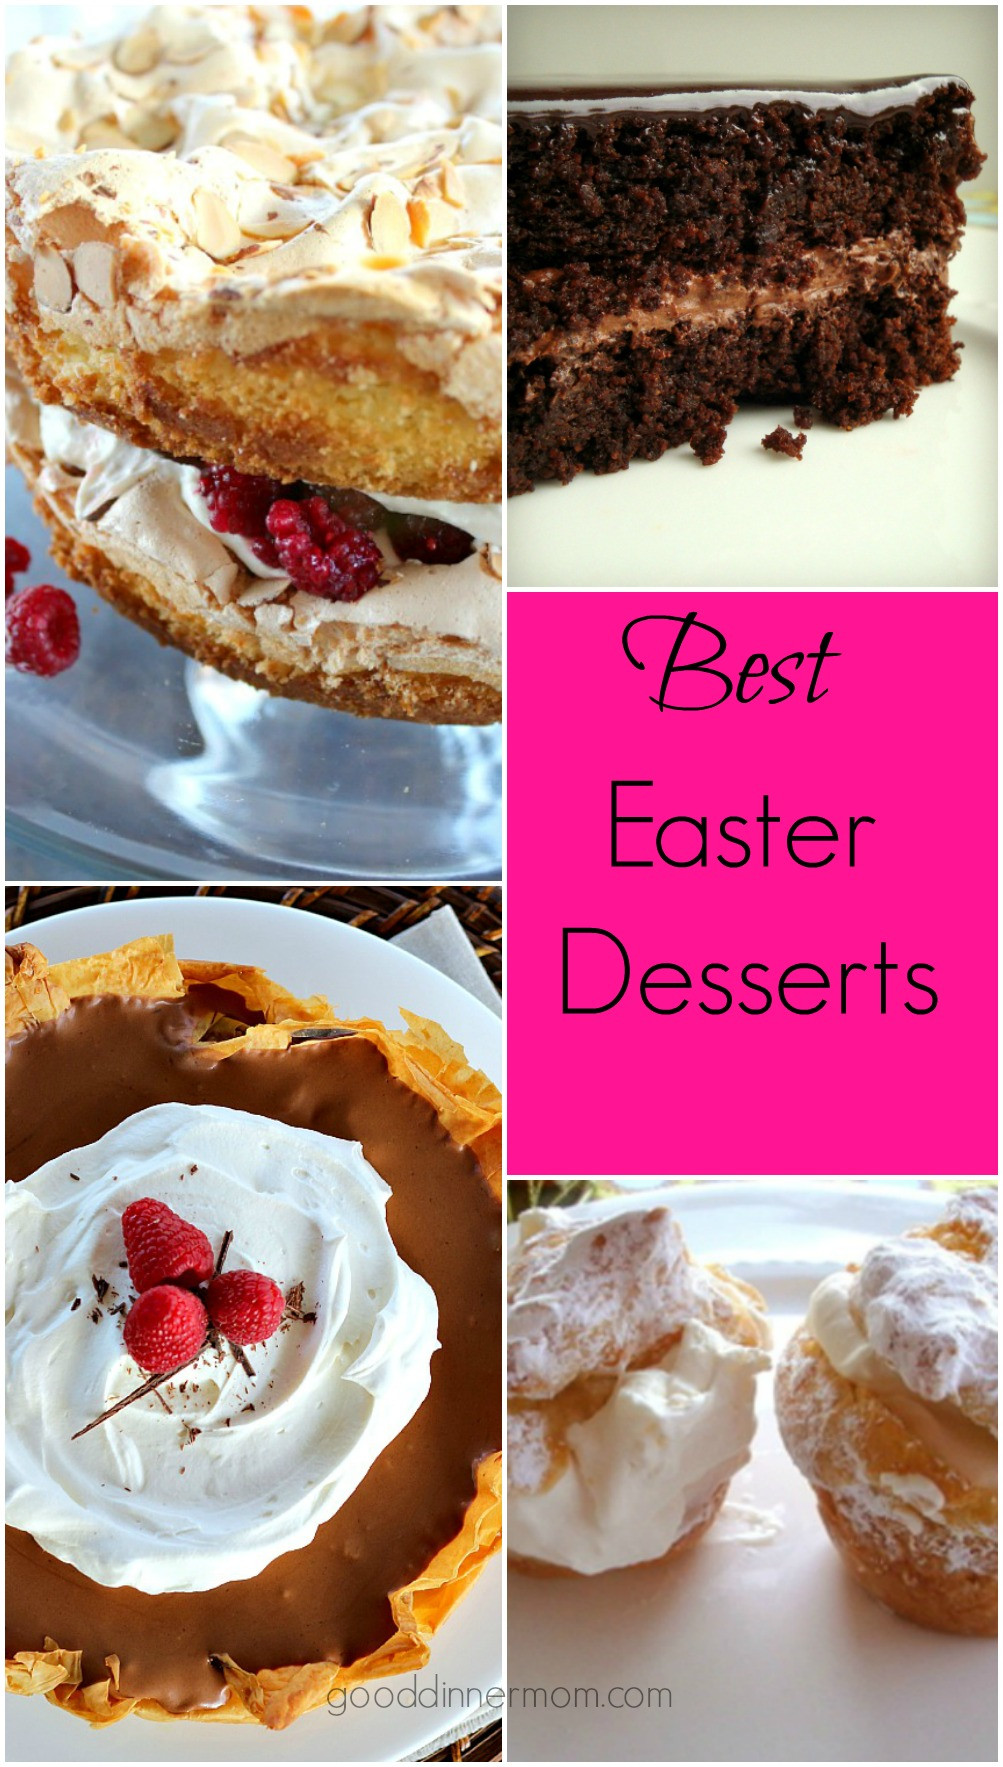 Easter Dinner Desserts
 Easter Dessert Recipes Good Dinner Mom